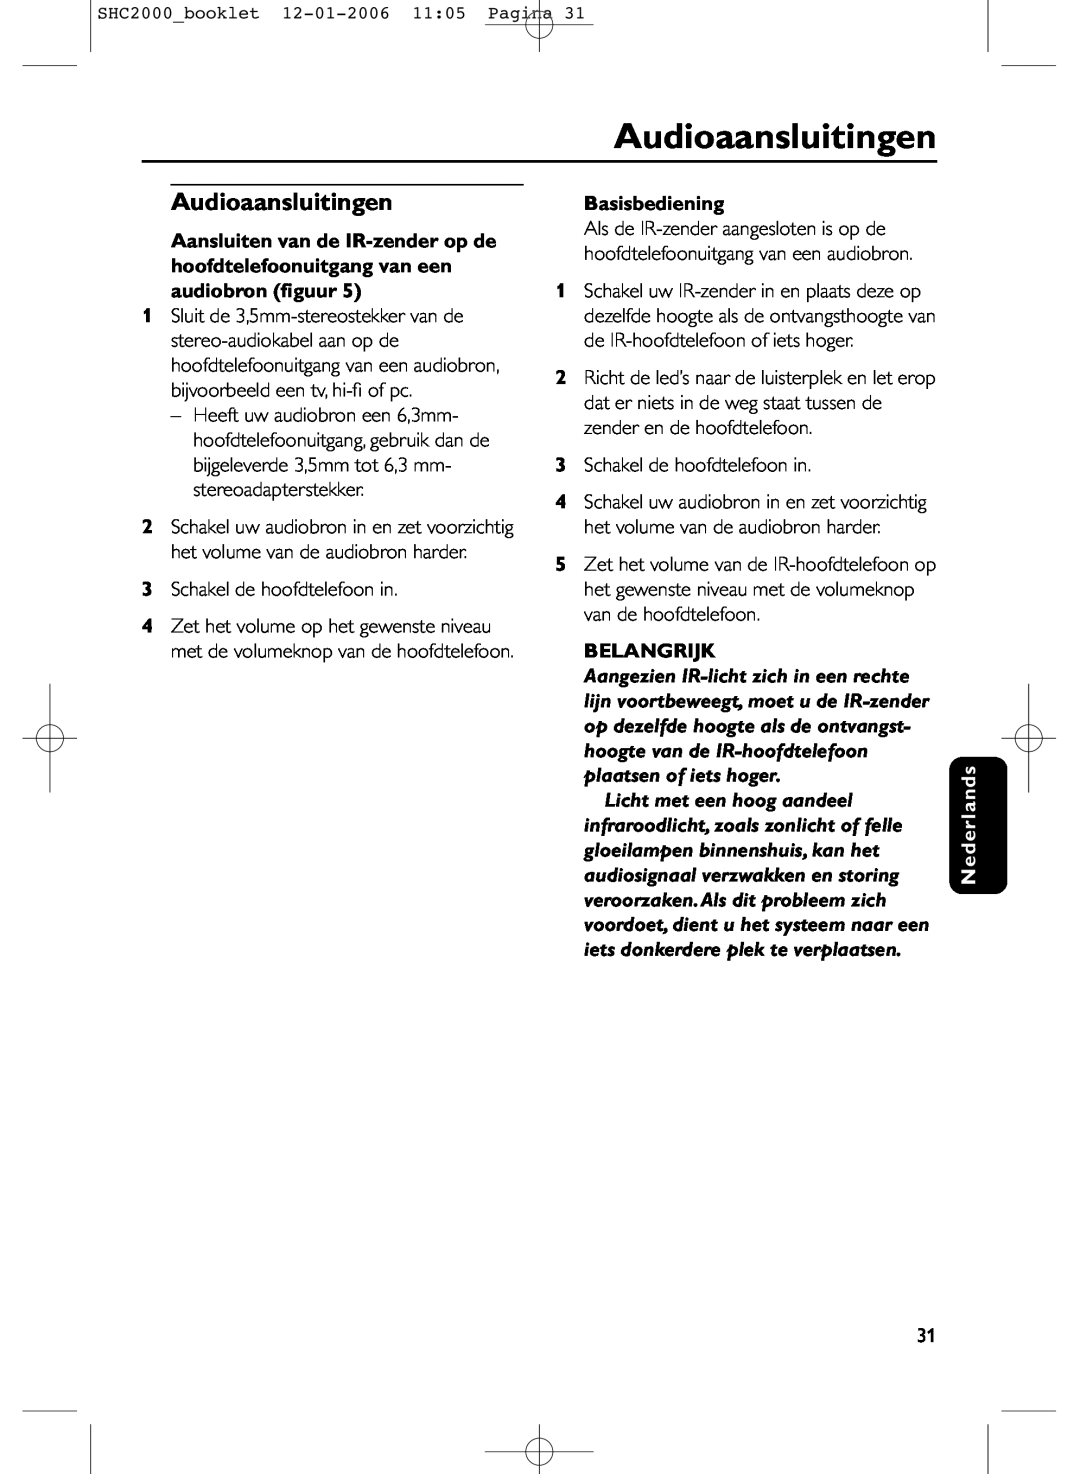 Philips SHC2000 manual Audioaansluitingen, Basisbediening, Belangrijk, Nederlands 